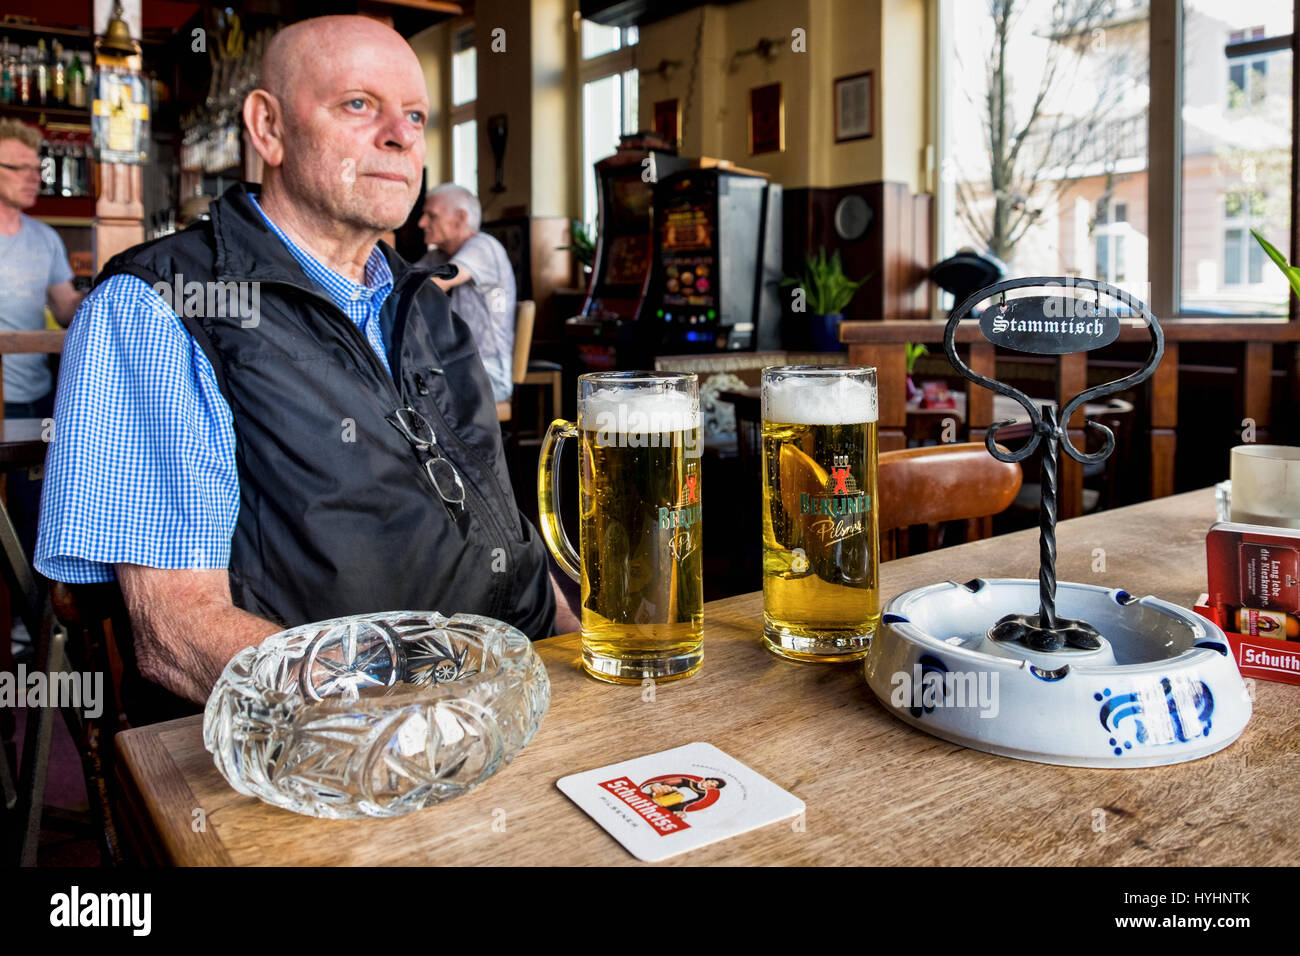 Berlin, Mitte, Zum Biermichel Traditional German Corner pub interior,Senior elderly man drinking beer in typical Local bar.Table with stammtisch sign. Stock Photo